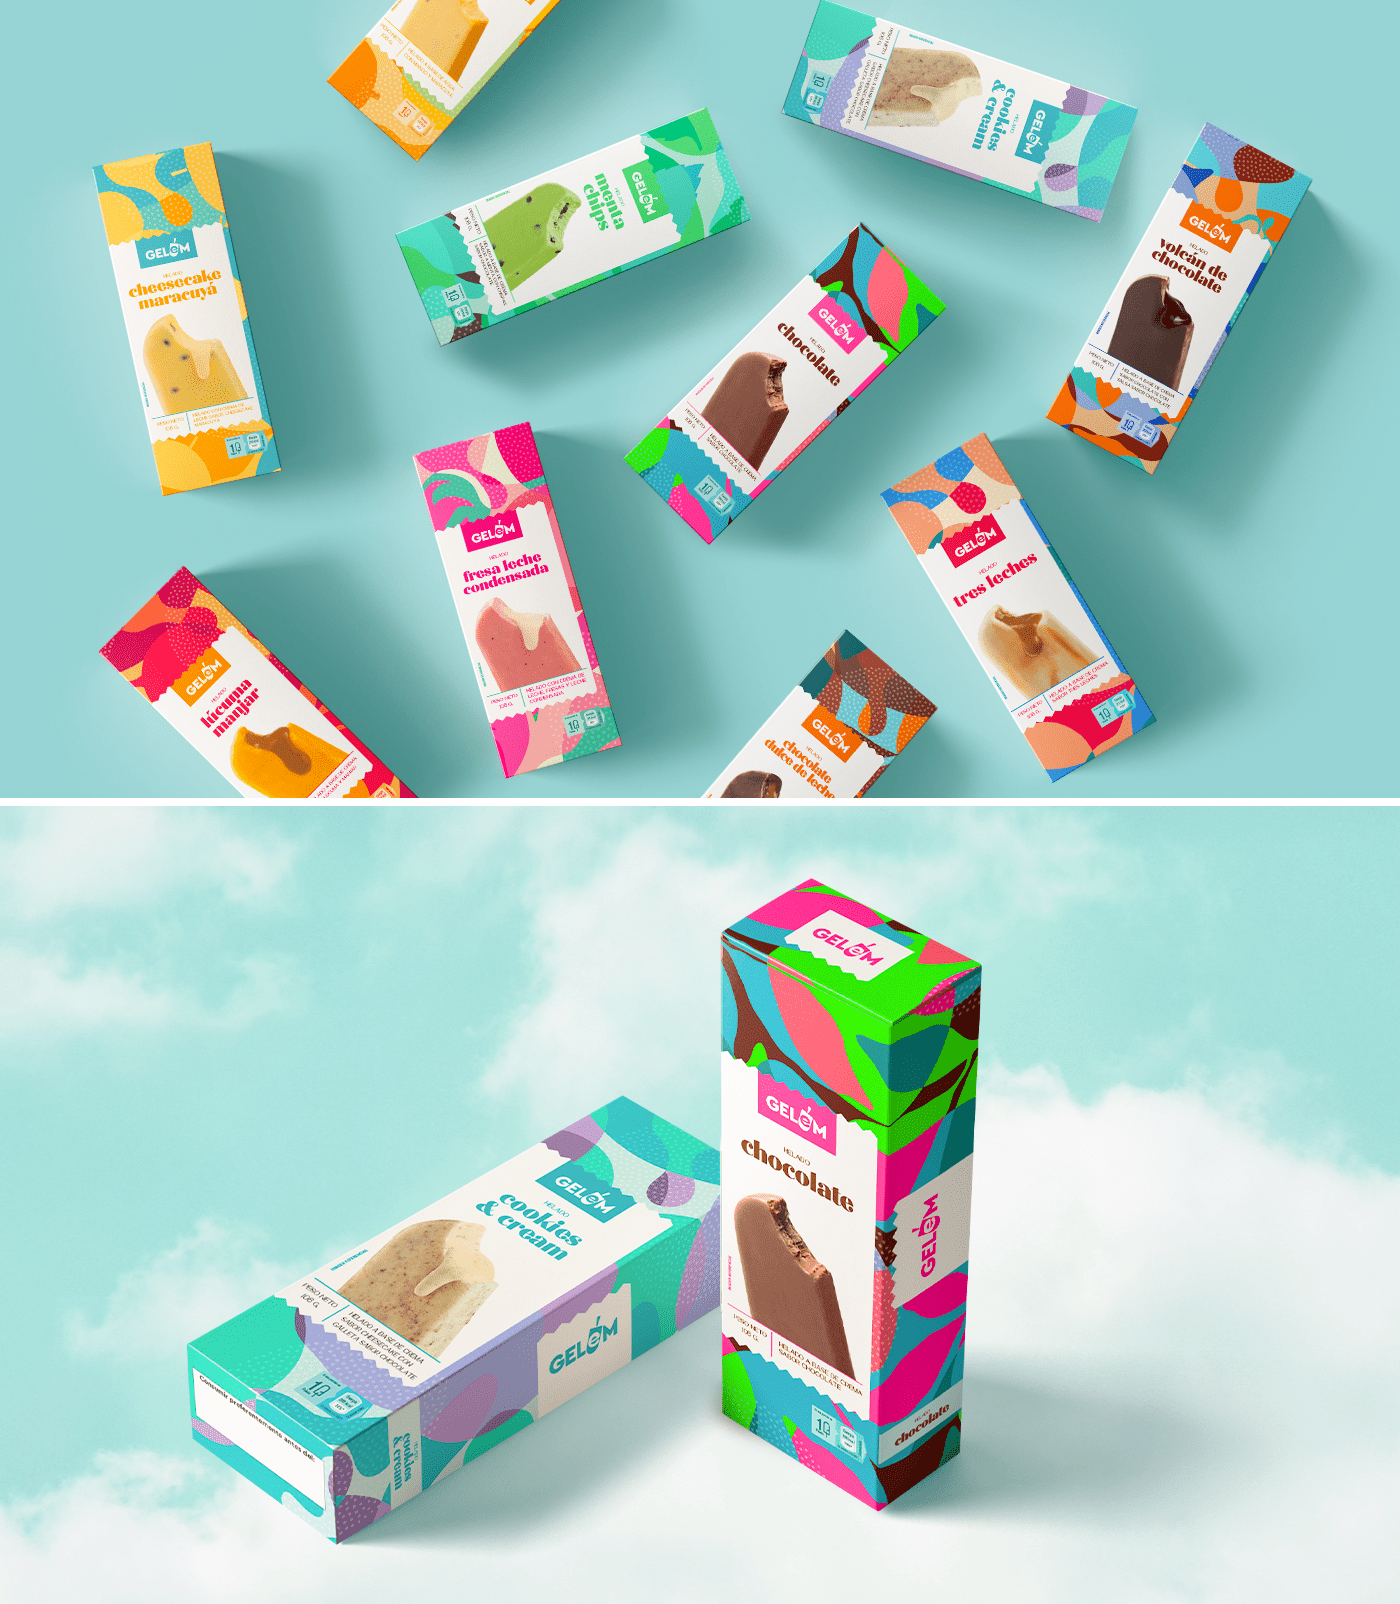 Gelem 秘鲁手工冰淇淋品牌包装设计(图2)